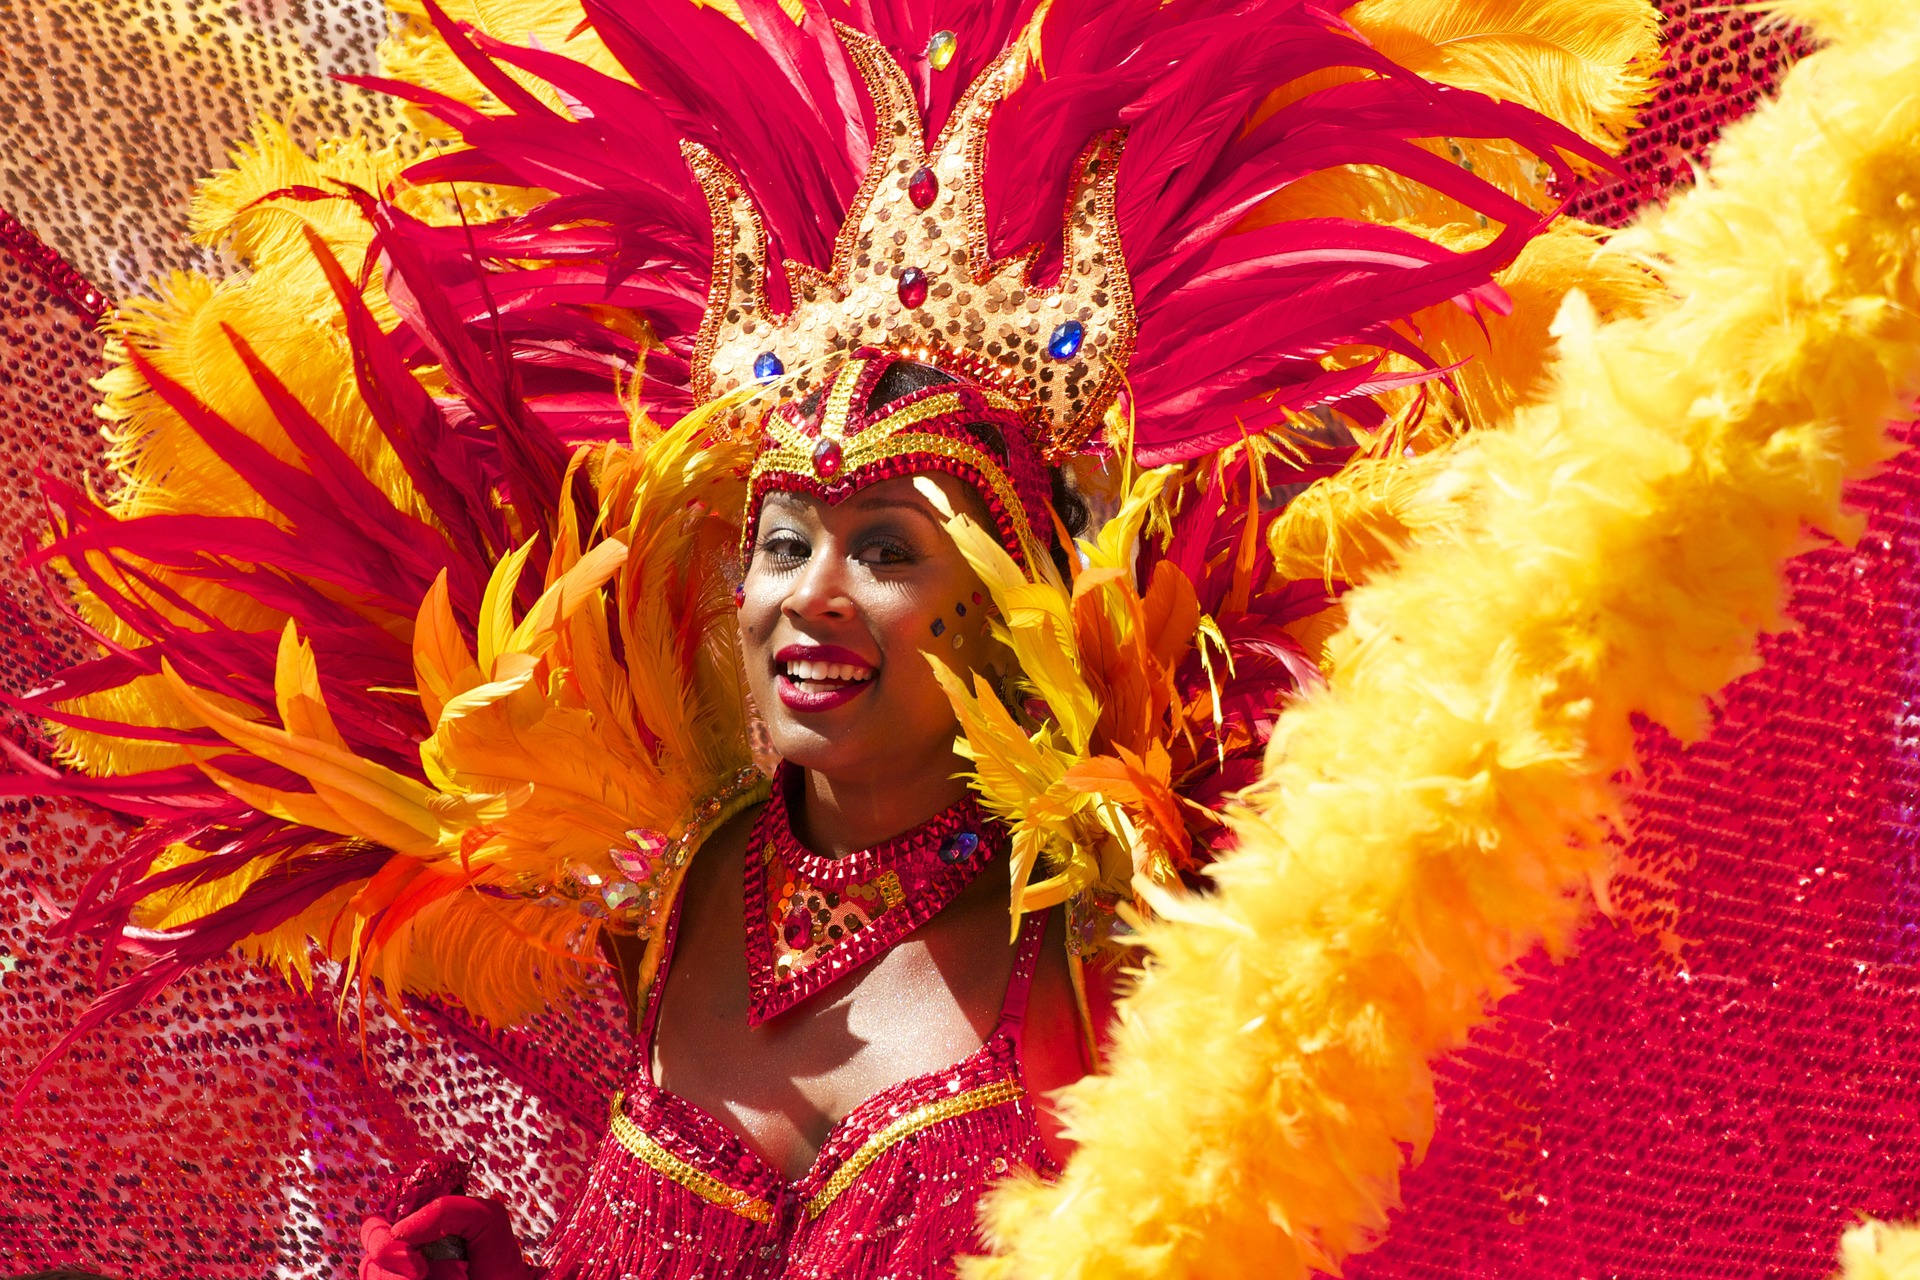 Recomendaciones para disfrutar de los carnavales y preservar la salud